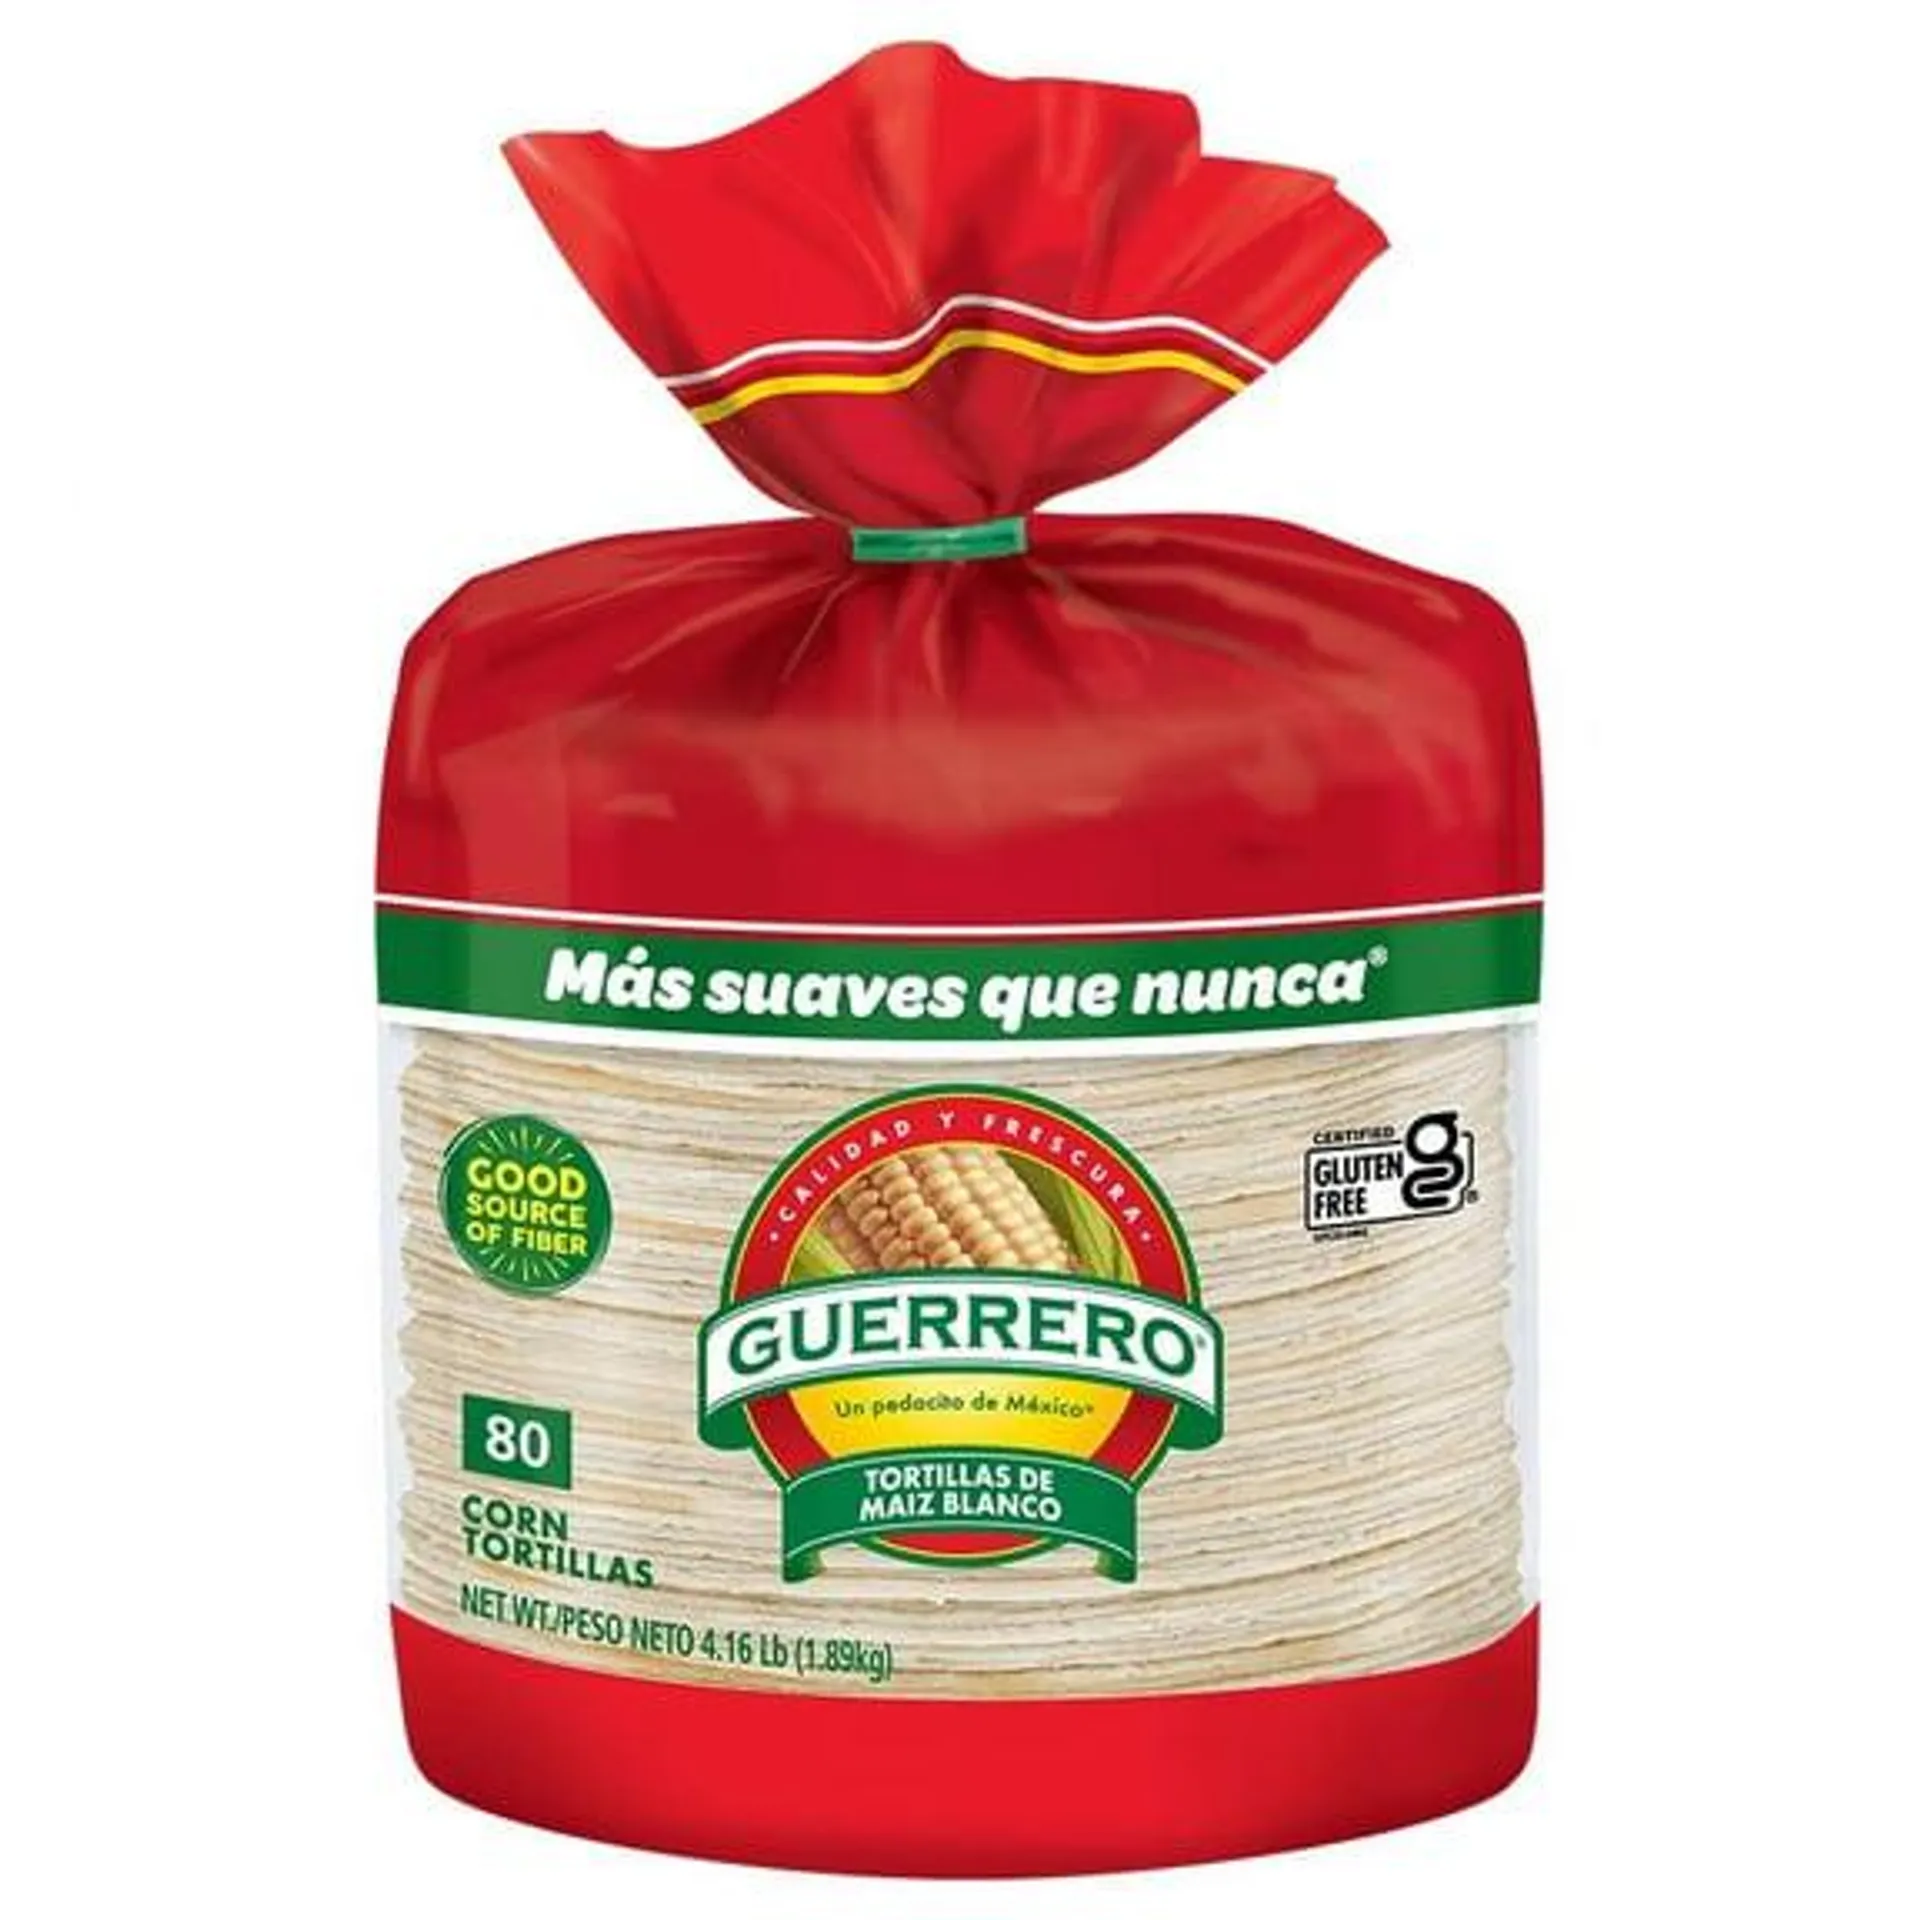 Guerrero Gluten-Free White Corn Tortillas, 80 Count